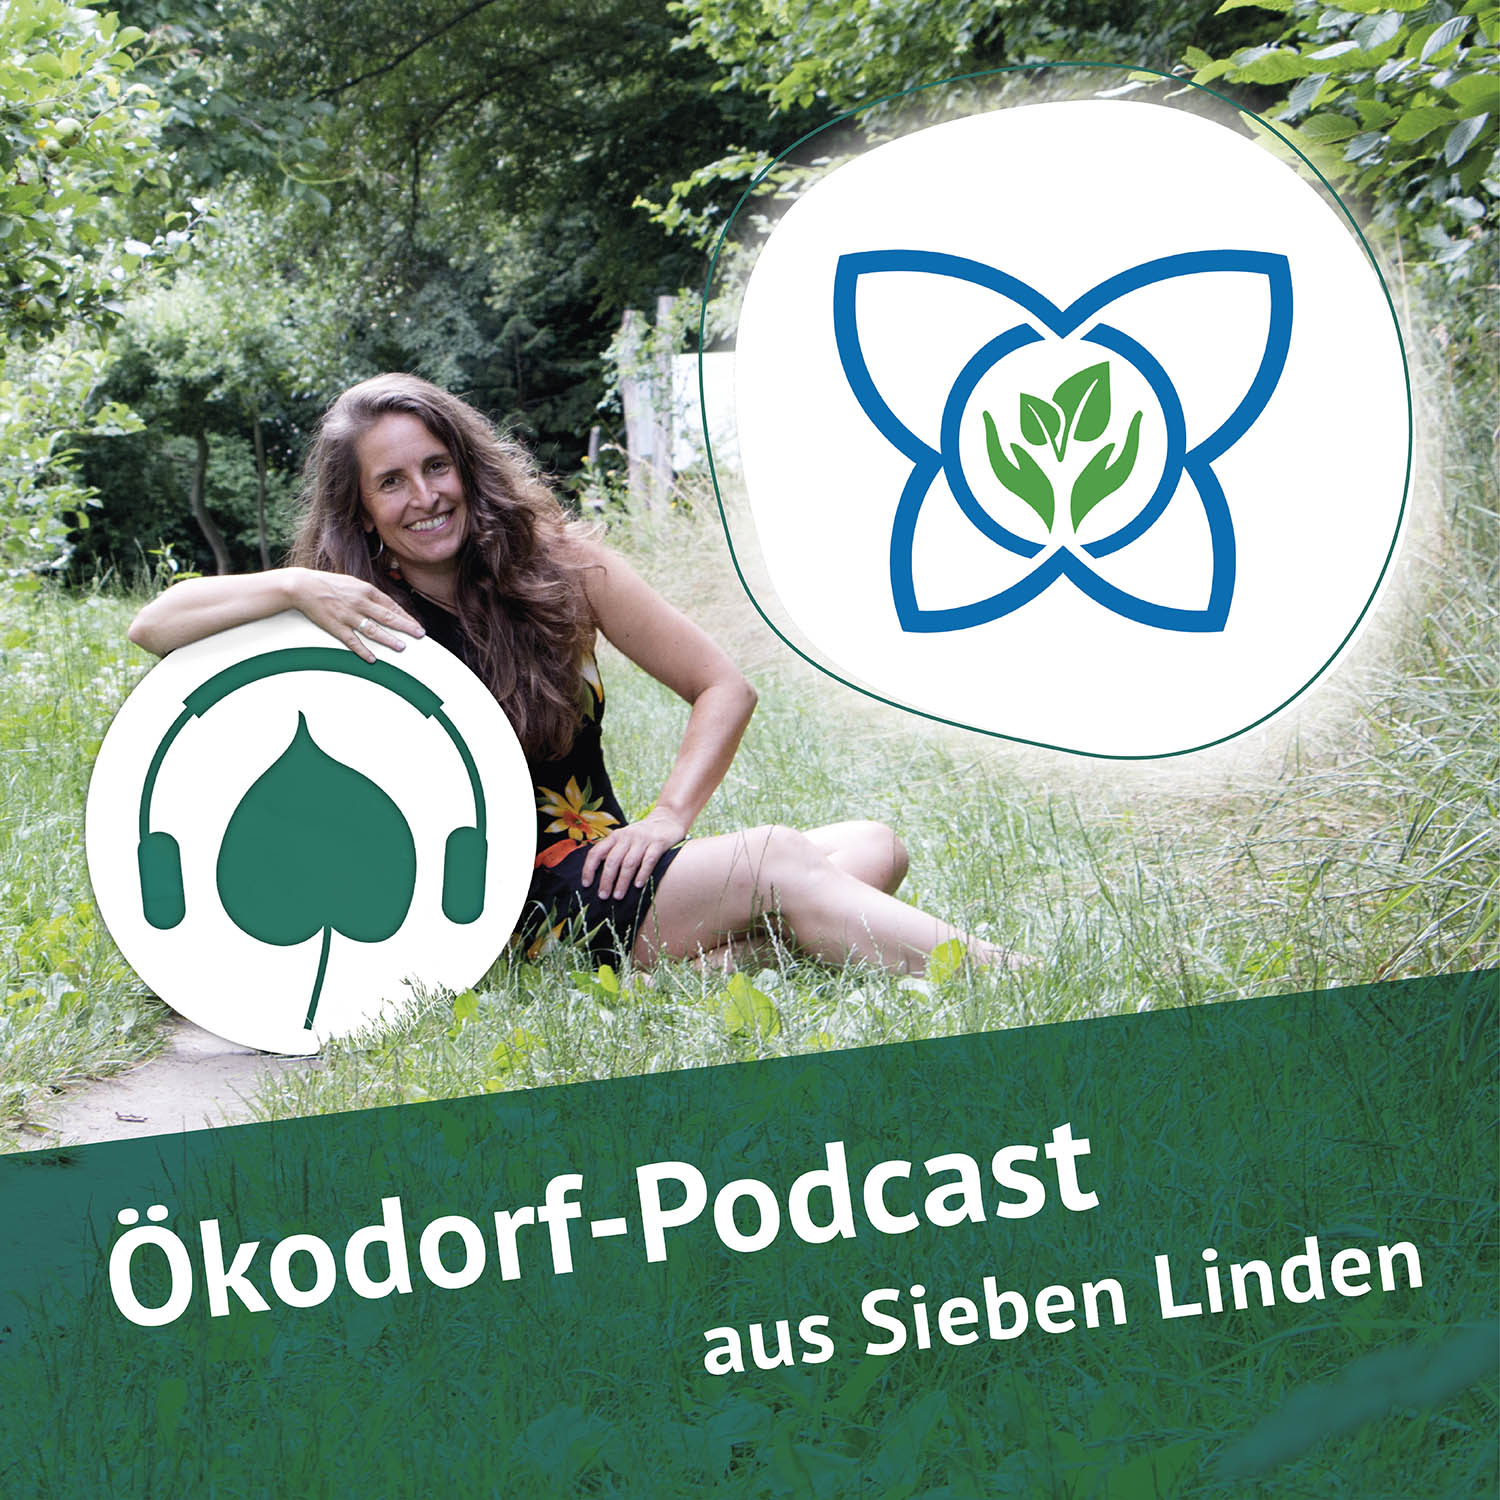 Podcastcover mit Simone und dem Logo von Gen Deutschland